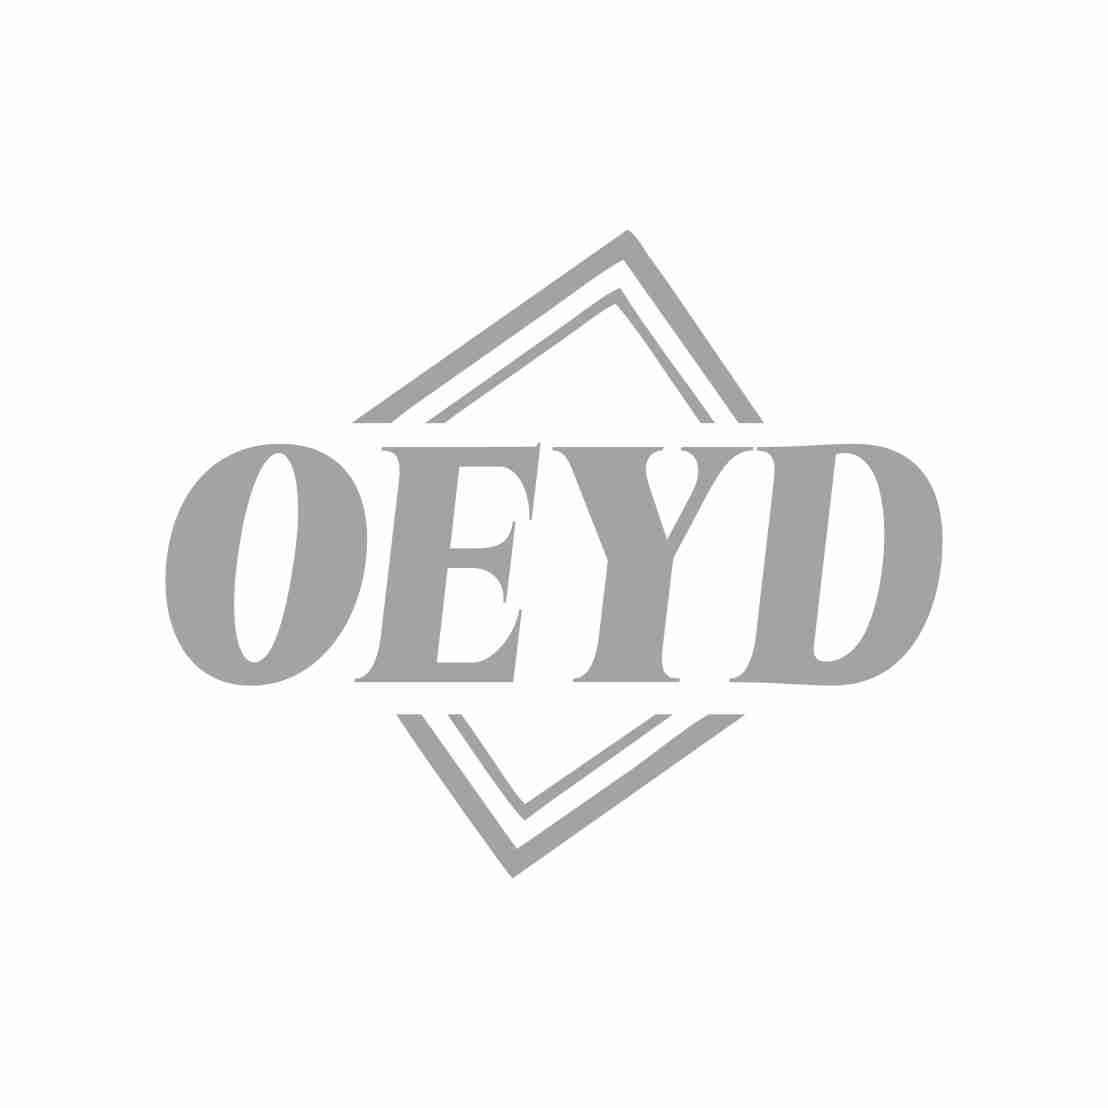 25类-服装鞋帽OEYD商标转让